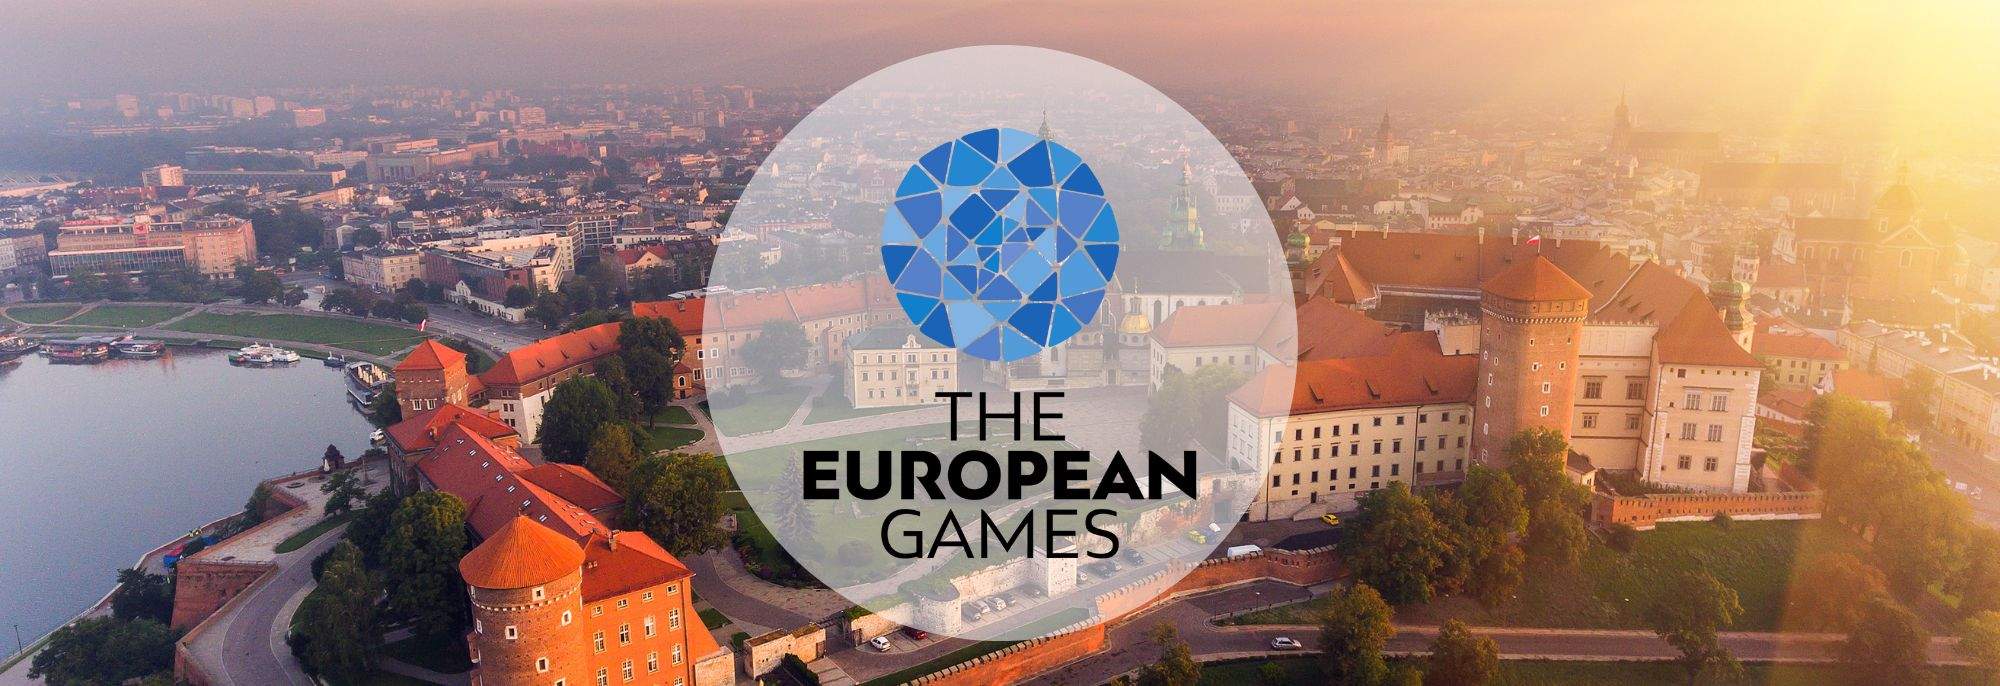 Kraków - Din partner för känslor under European Games 2023